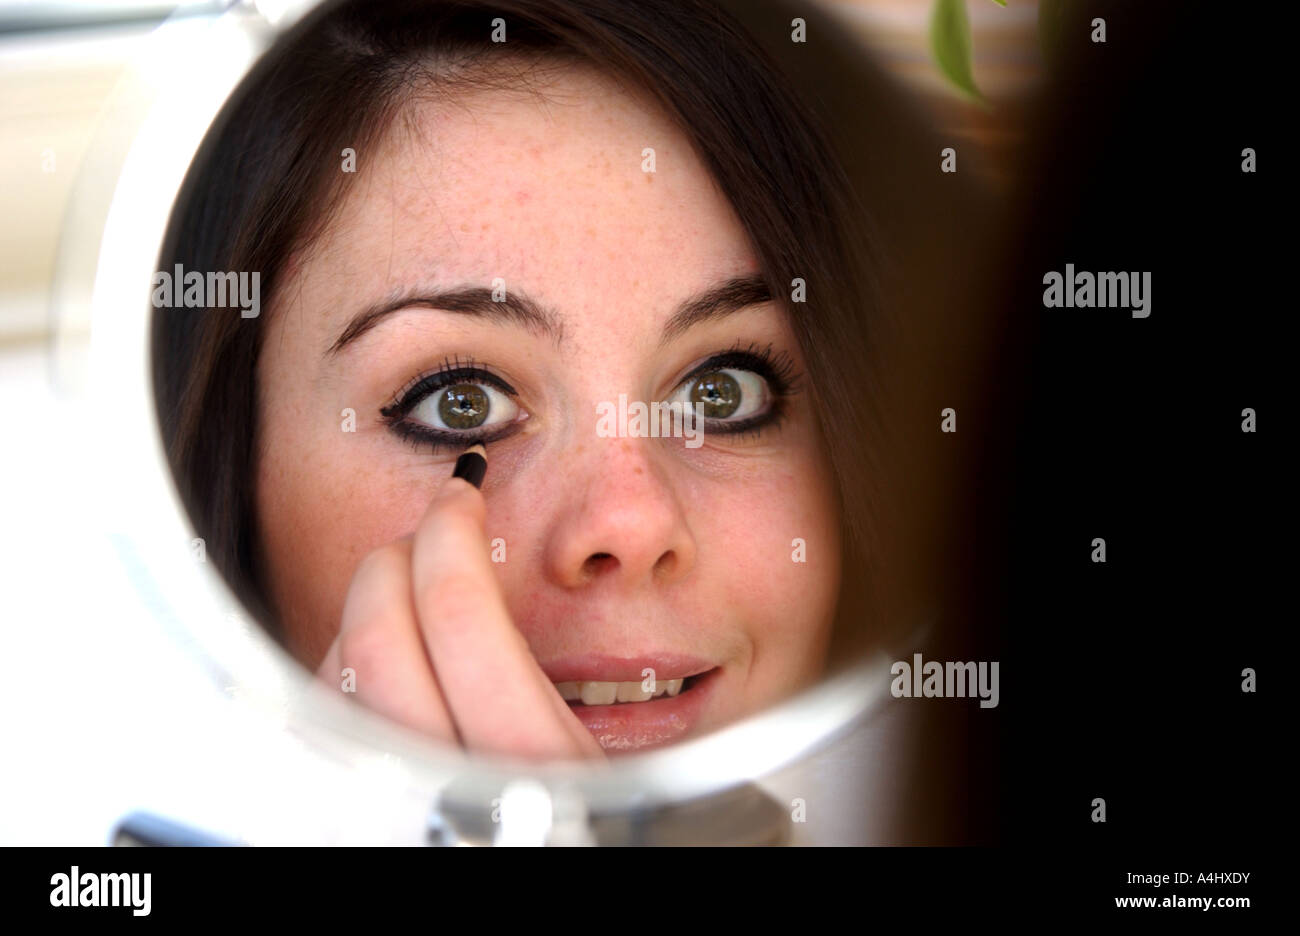 Brunette young girl teenage applying eye makeup in mirror Stock Photo